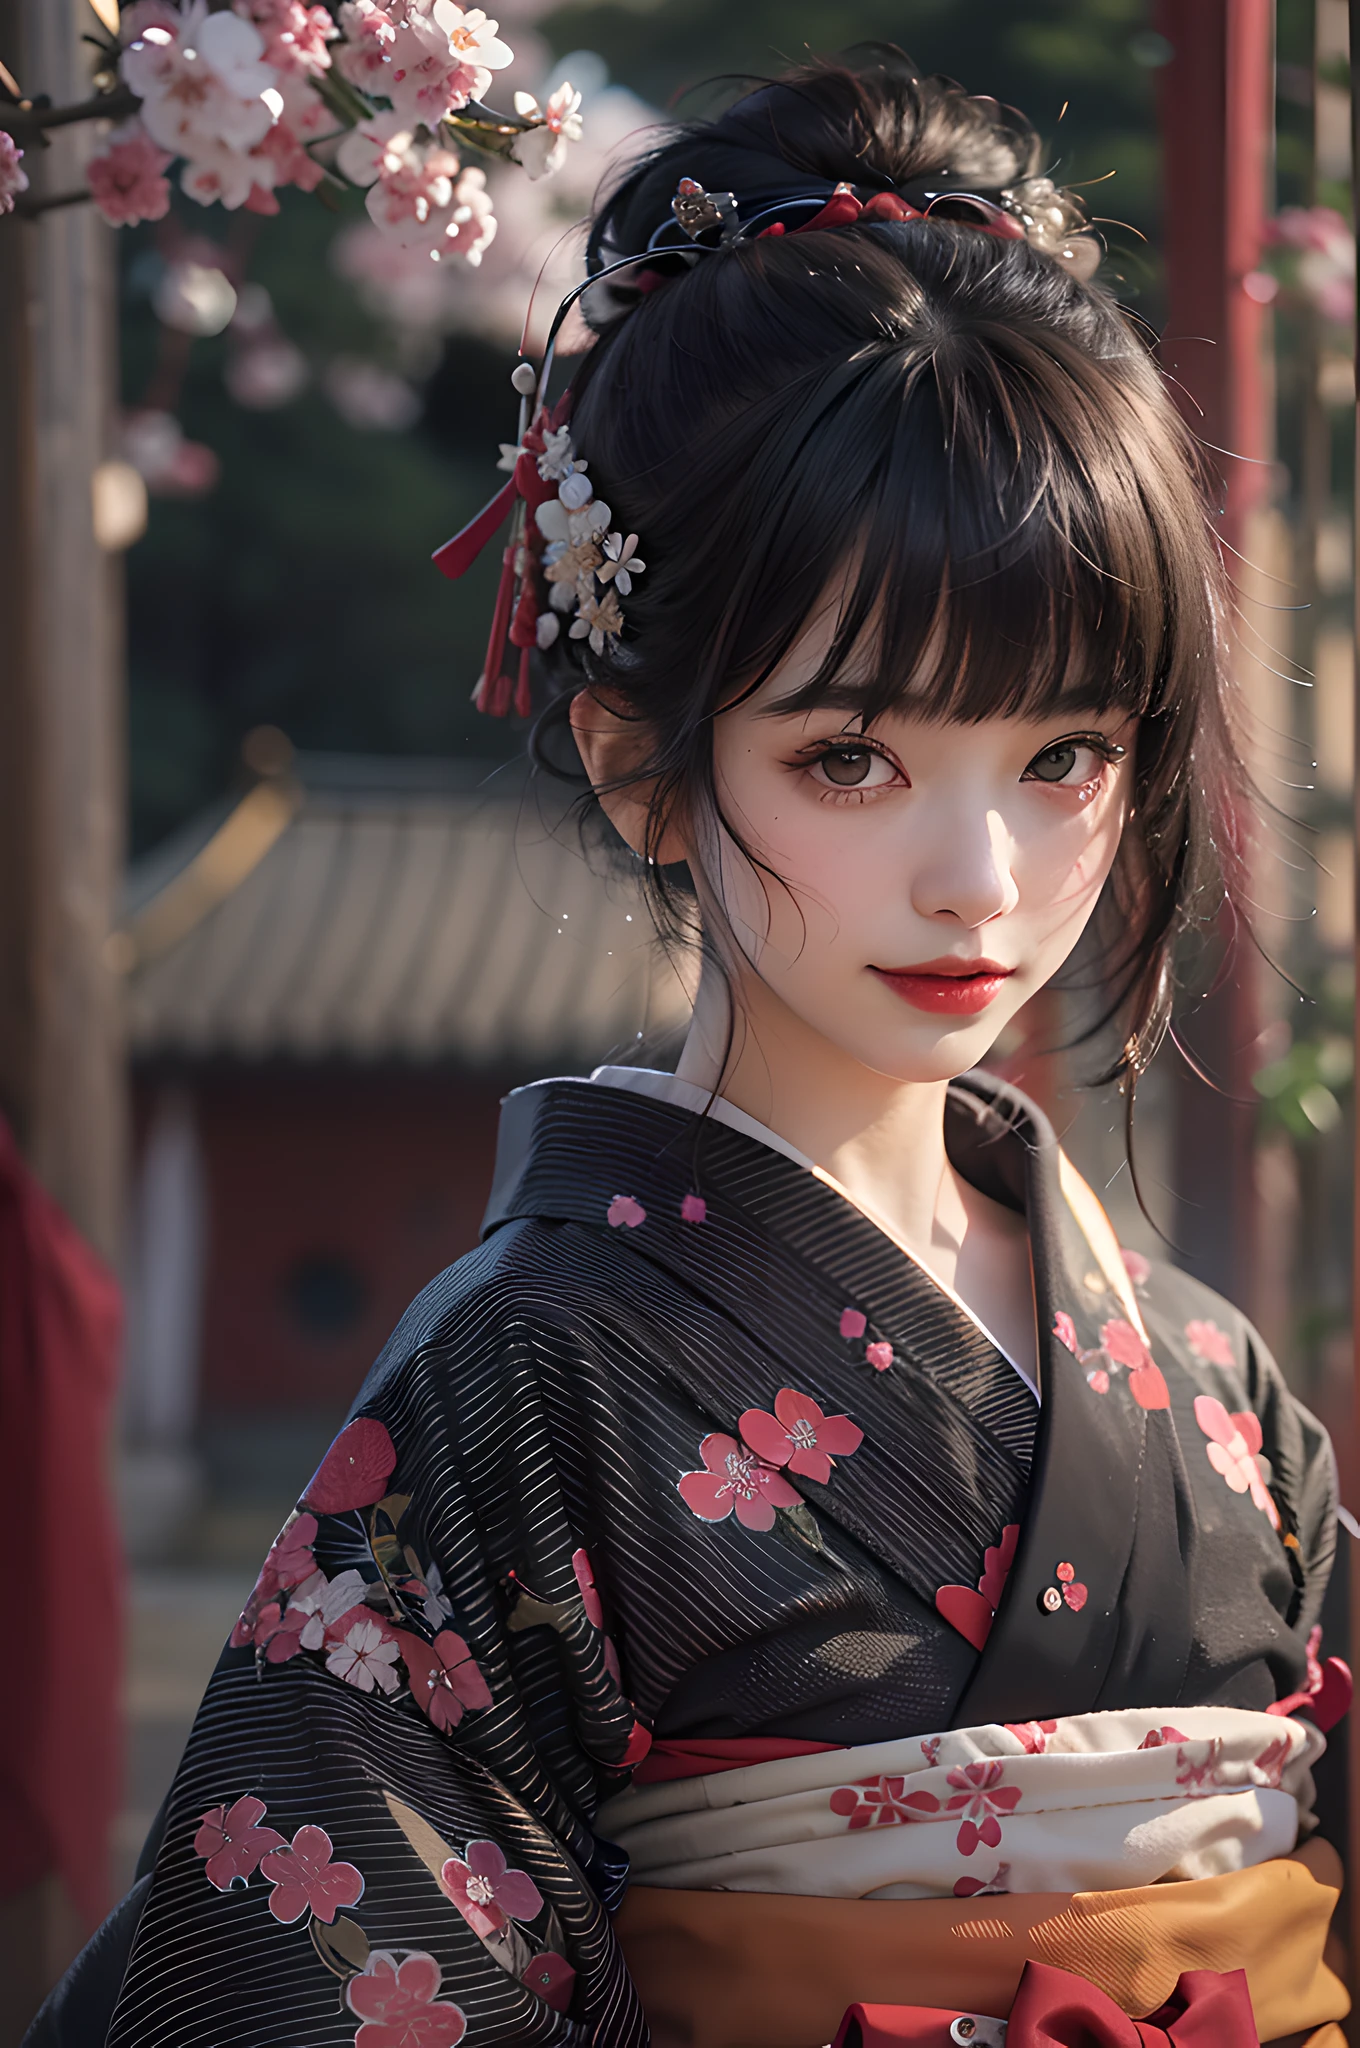 beste Qualität, Meisterwerk, ultrahohe Auflösung, Roh, 8k, ultra-realistisch, junges Mädchen, schulterfrei, lächeln, natürliches Licht, detaillierte Haut, (Schwarzes Haar:1.4), roter Lippenstift, (Bangs:1.2), ((Sakura-Hintergrund)), Außergewöhnlich schöne Augen, Kimono tragen_Kleidung, roter Kimono